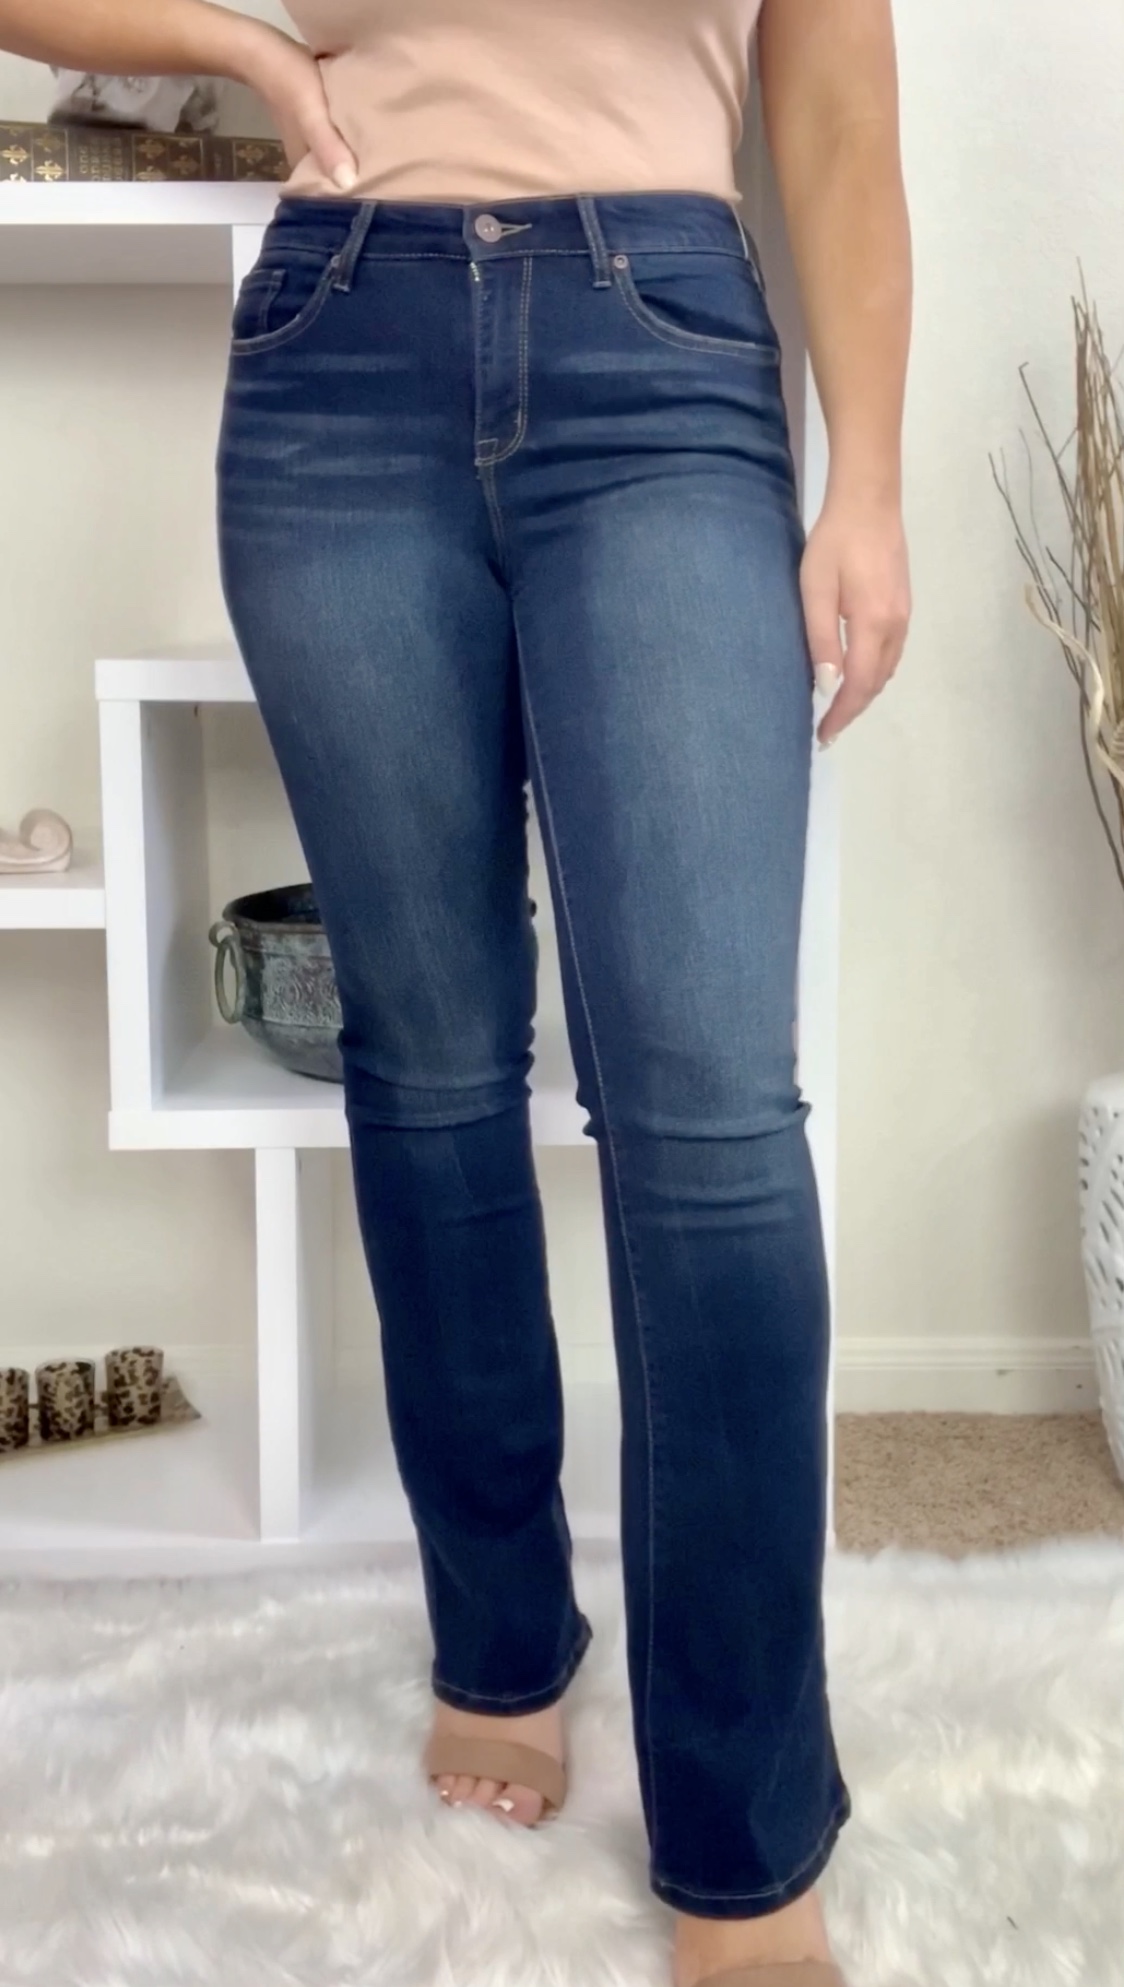 Sofia Vergara Jeans-Huge Try-on Walmart Haul | Madison Payne